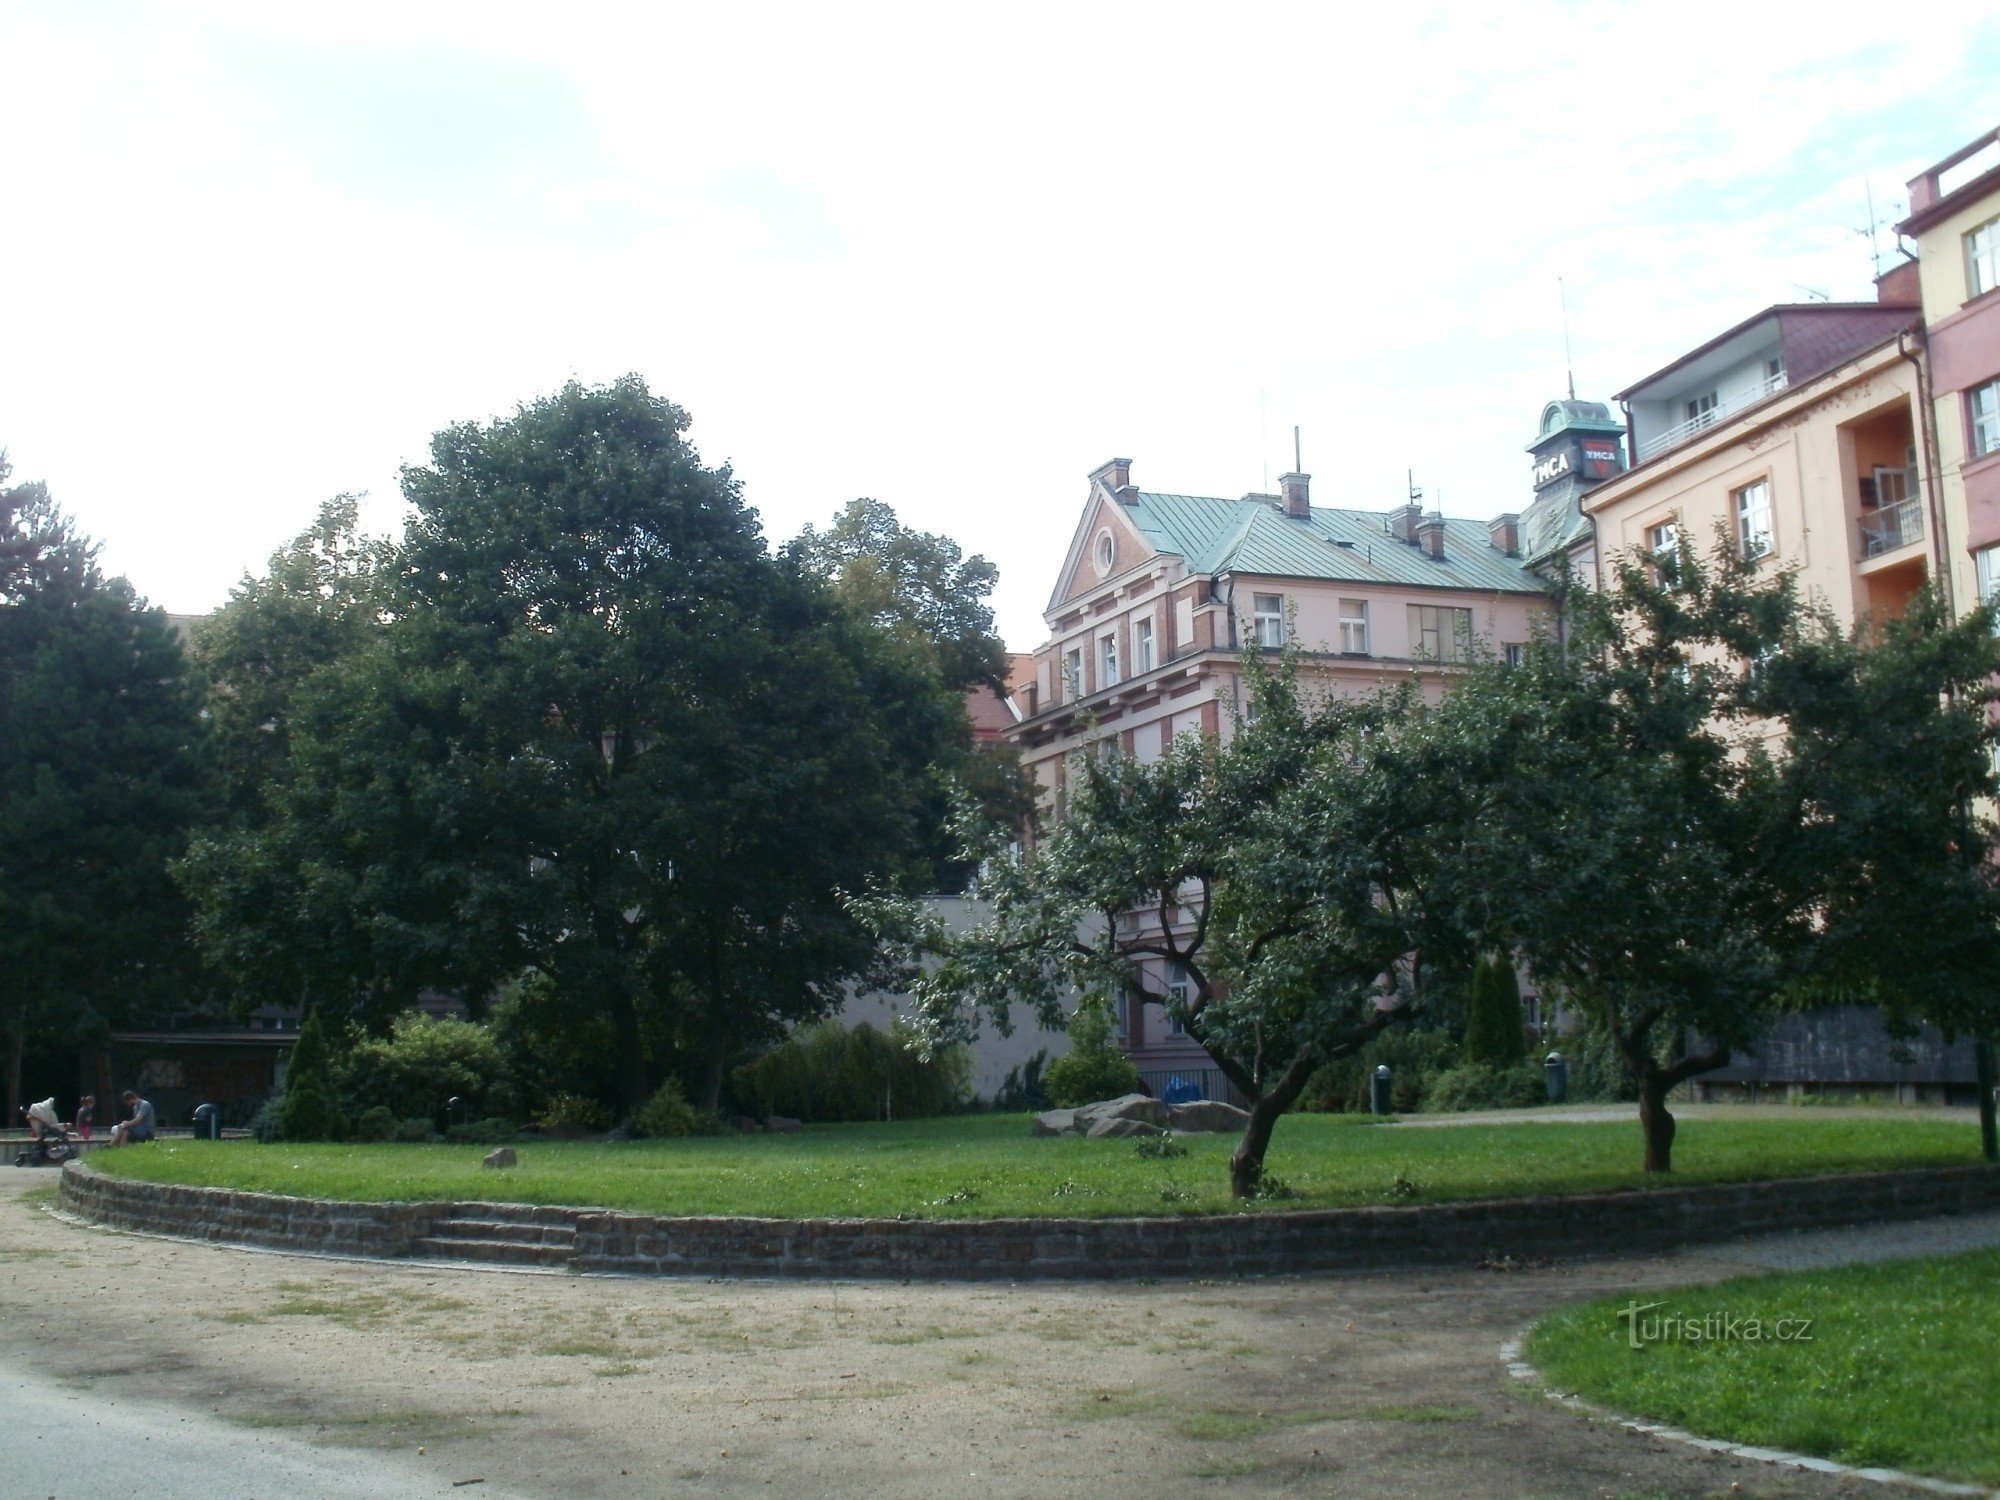 Hradec Králové - παραμυθένιο πάρκο